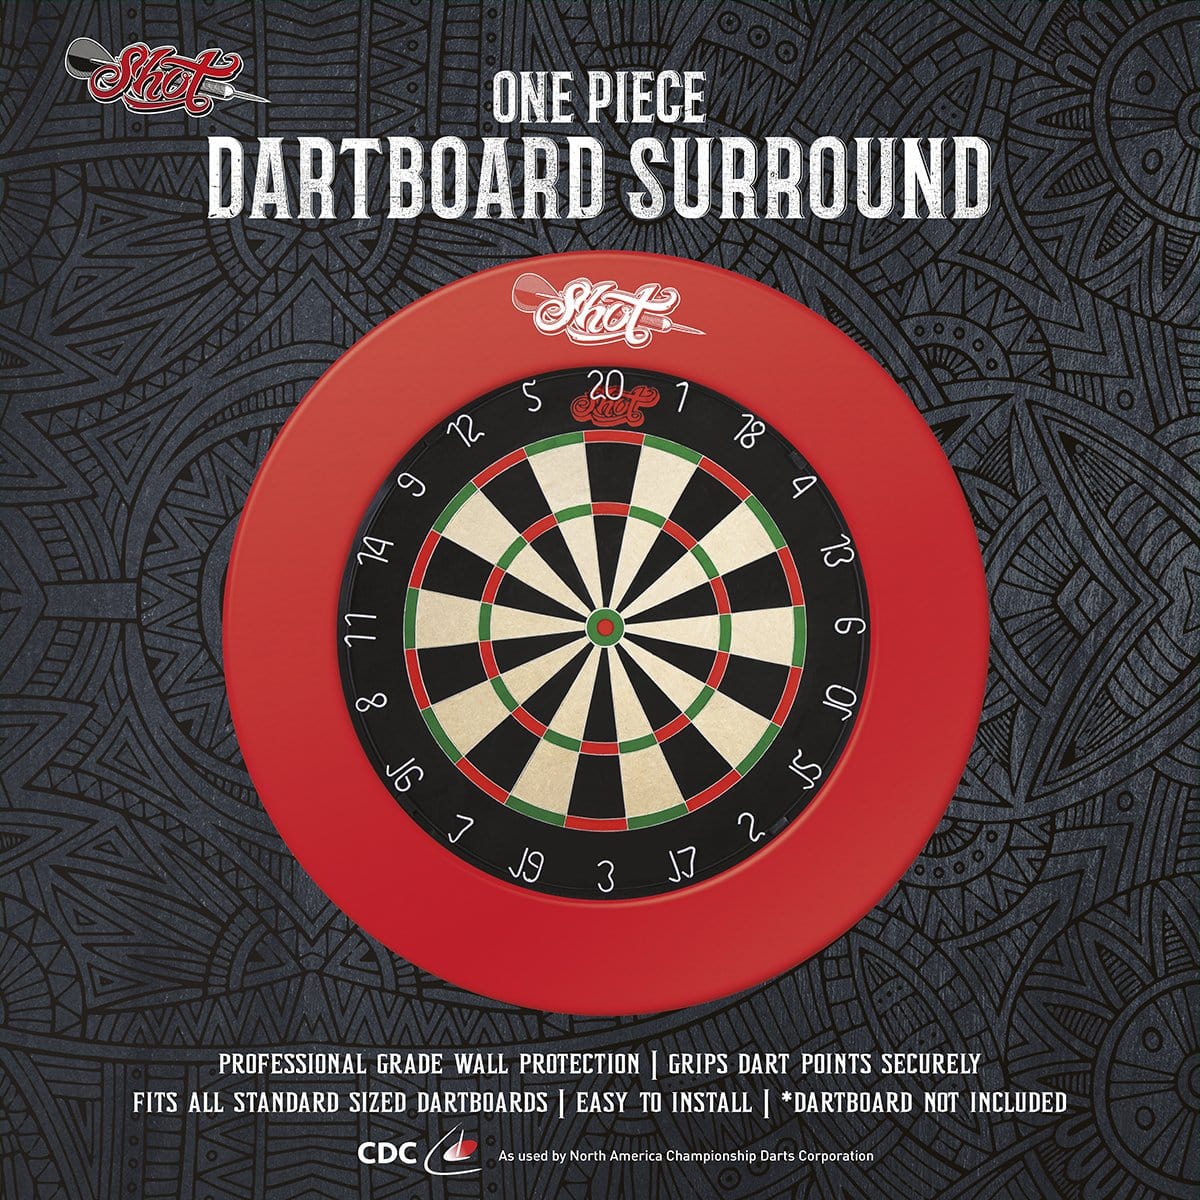 One Piece Dartboard Surround - Red